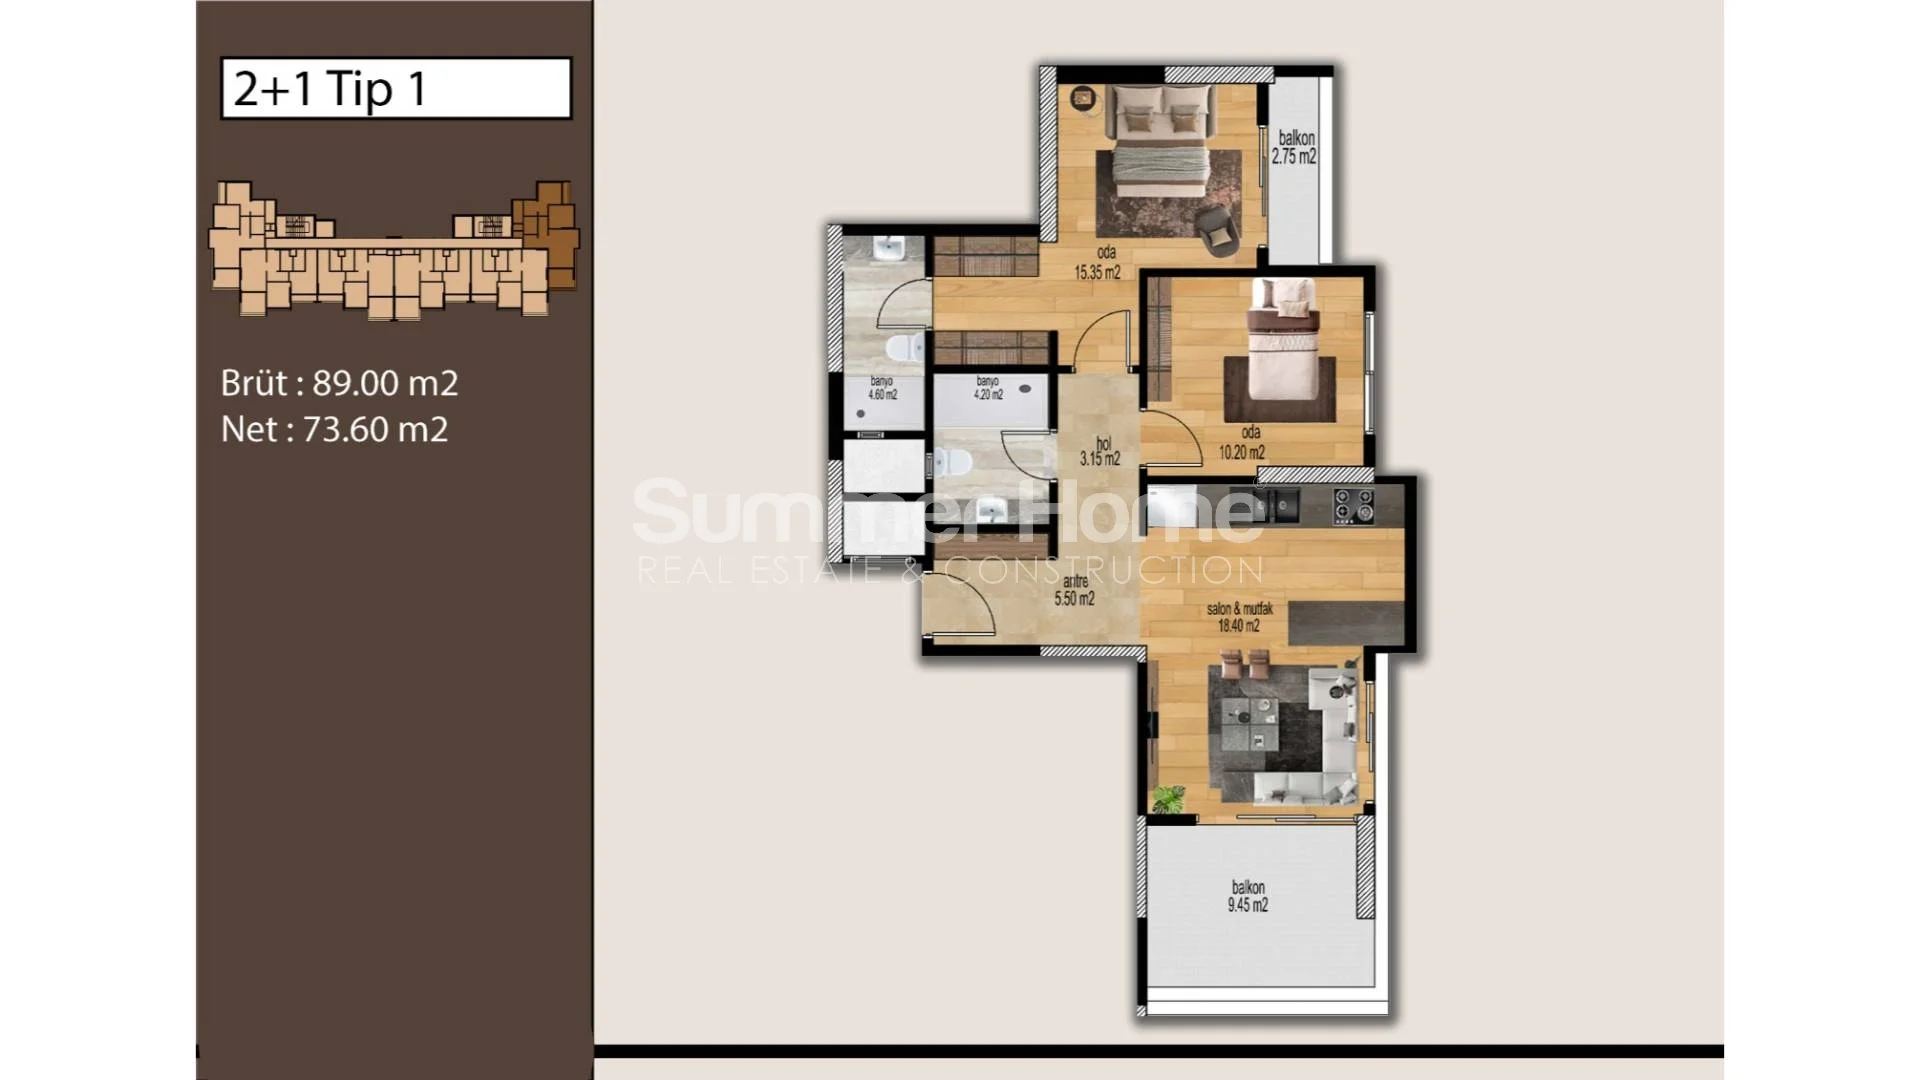 Mezitli, Mersin'de bulunan güzel modern daireler Plan - 20